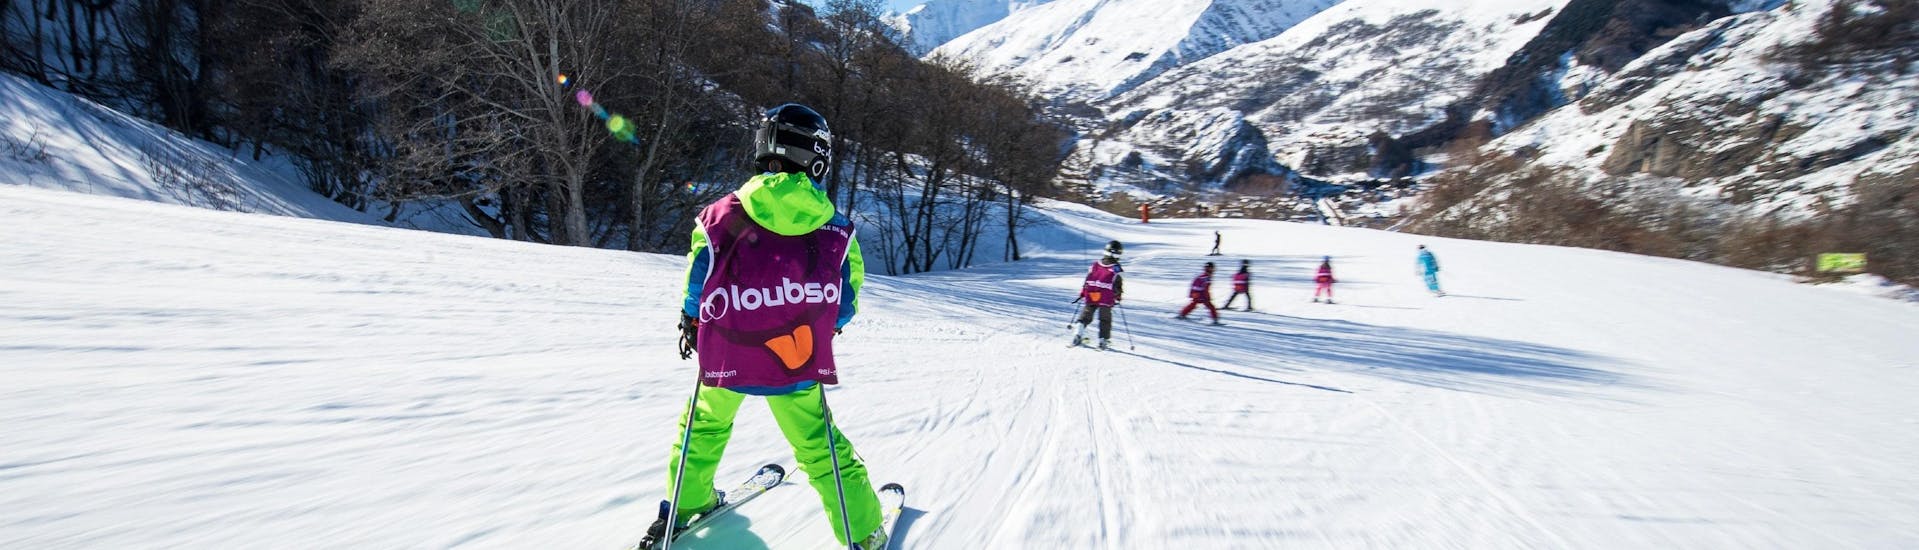 Les enfants descendent une piste pendant leur Cours de ski Enfants (5-13 ans) - Matin avec l'école de ski ESI Ski Family à Risoul.